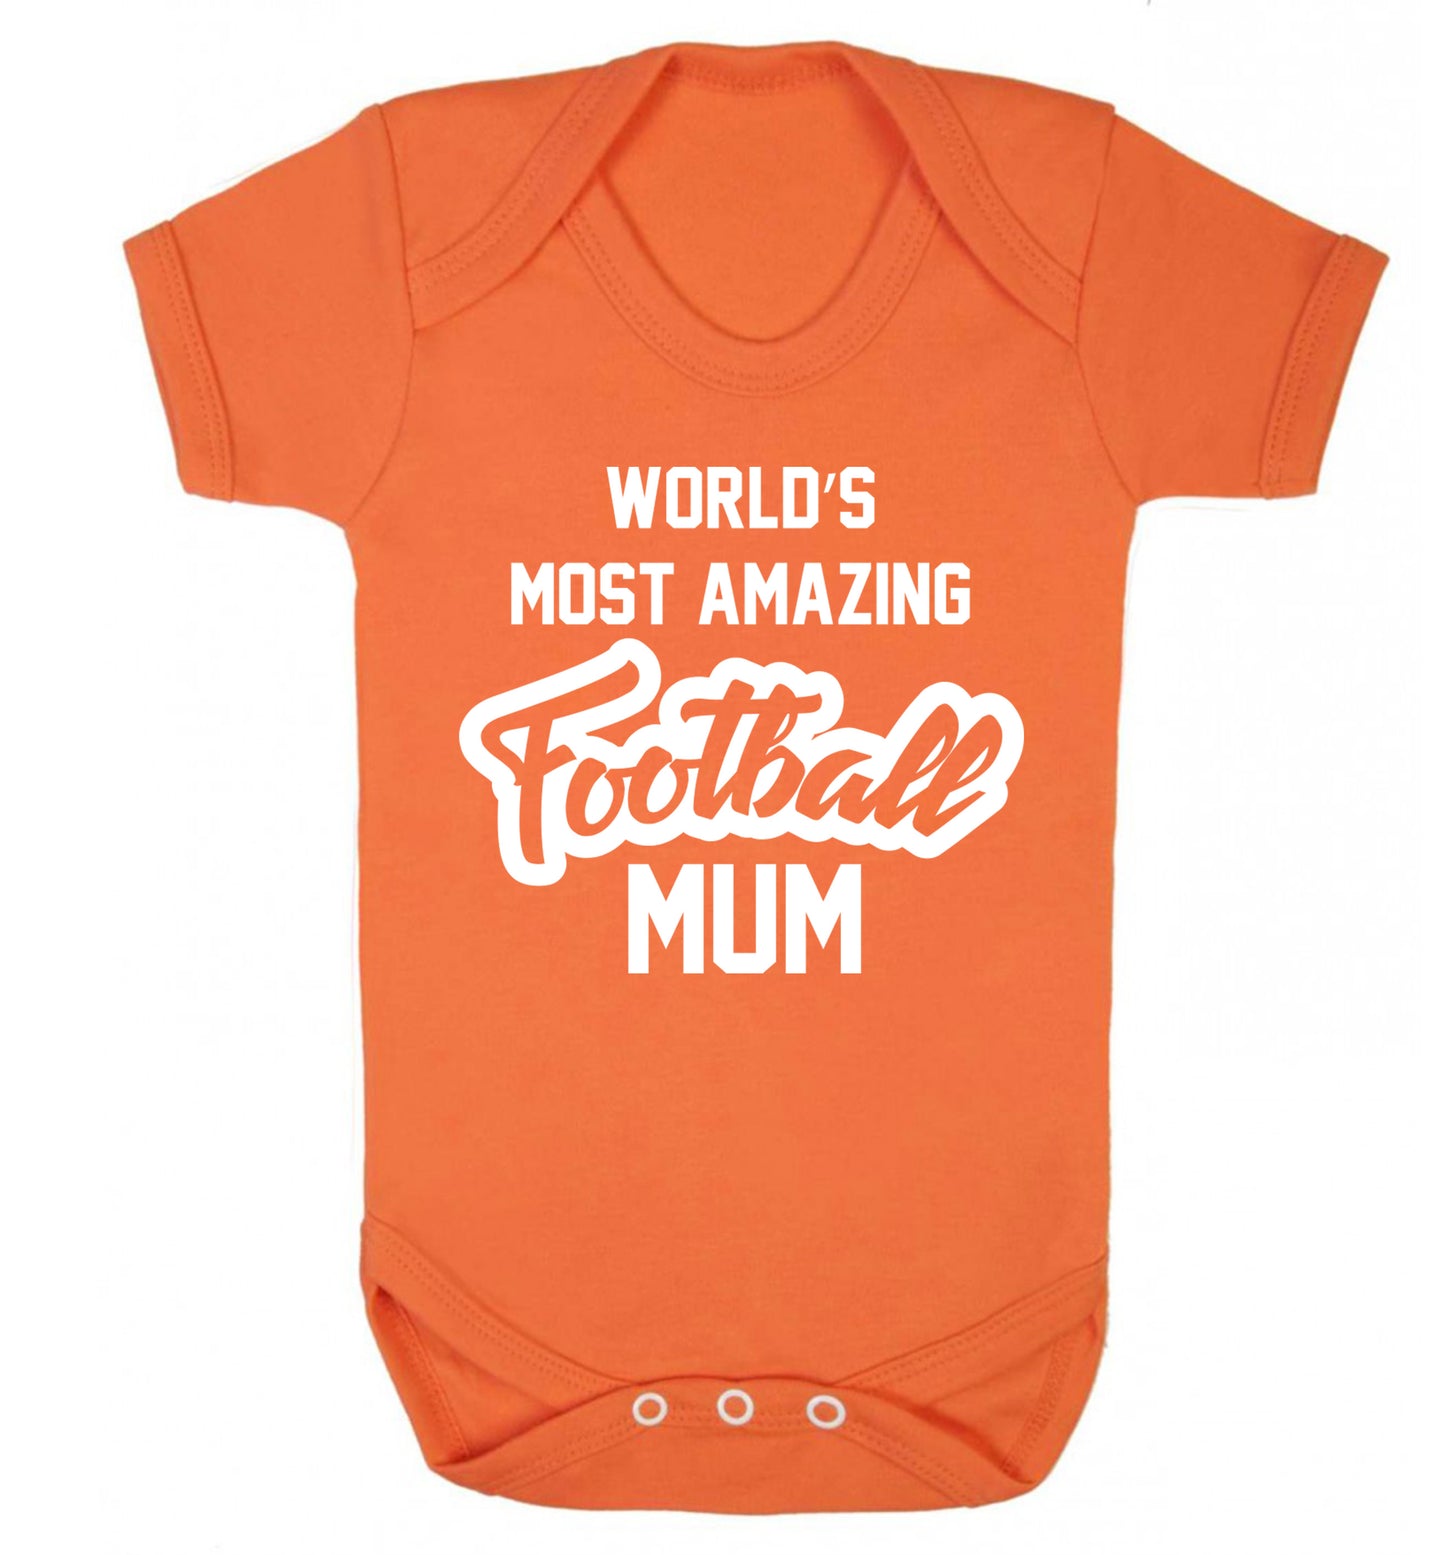 Worlds most amazing football mum Baby Vest orange 18-24 months